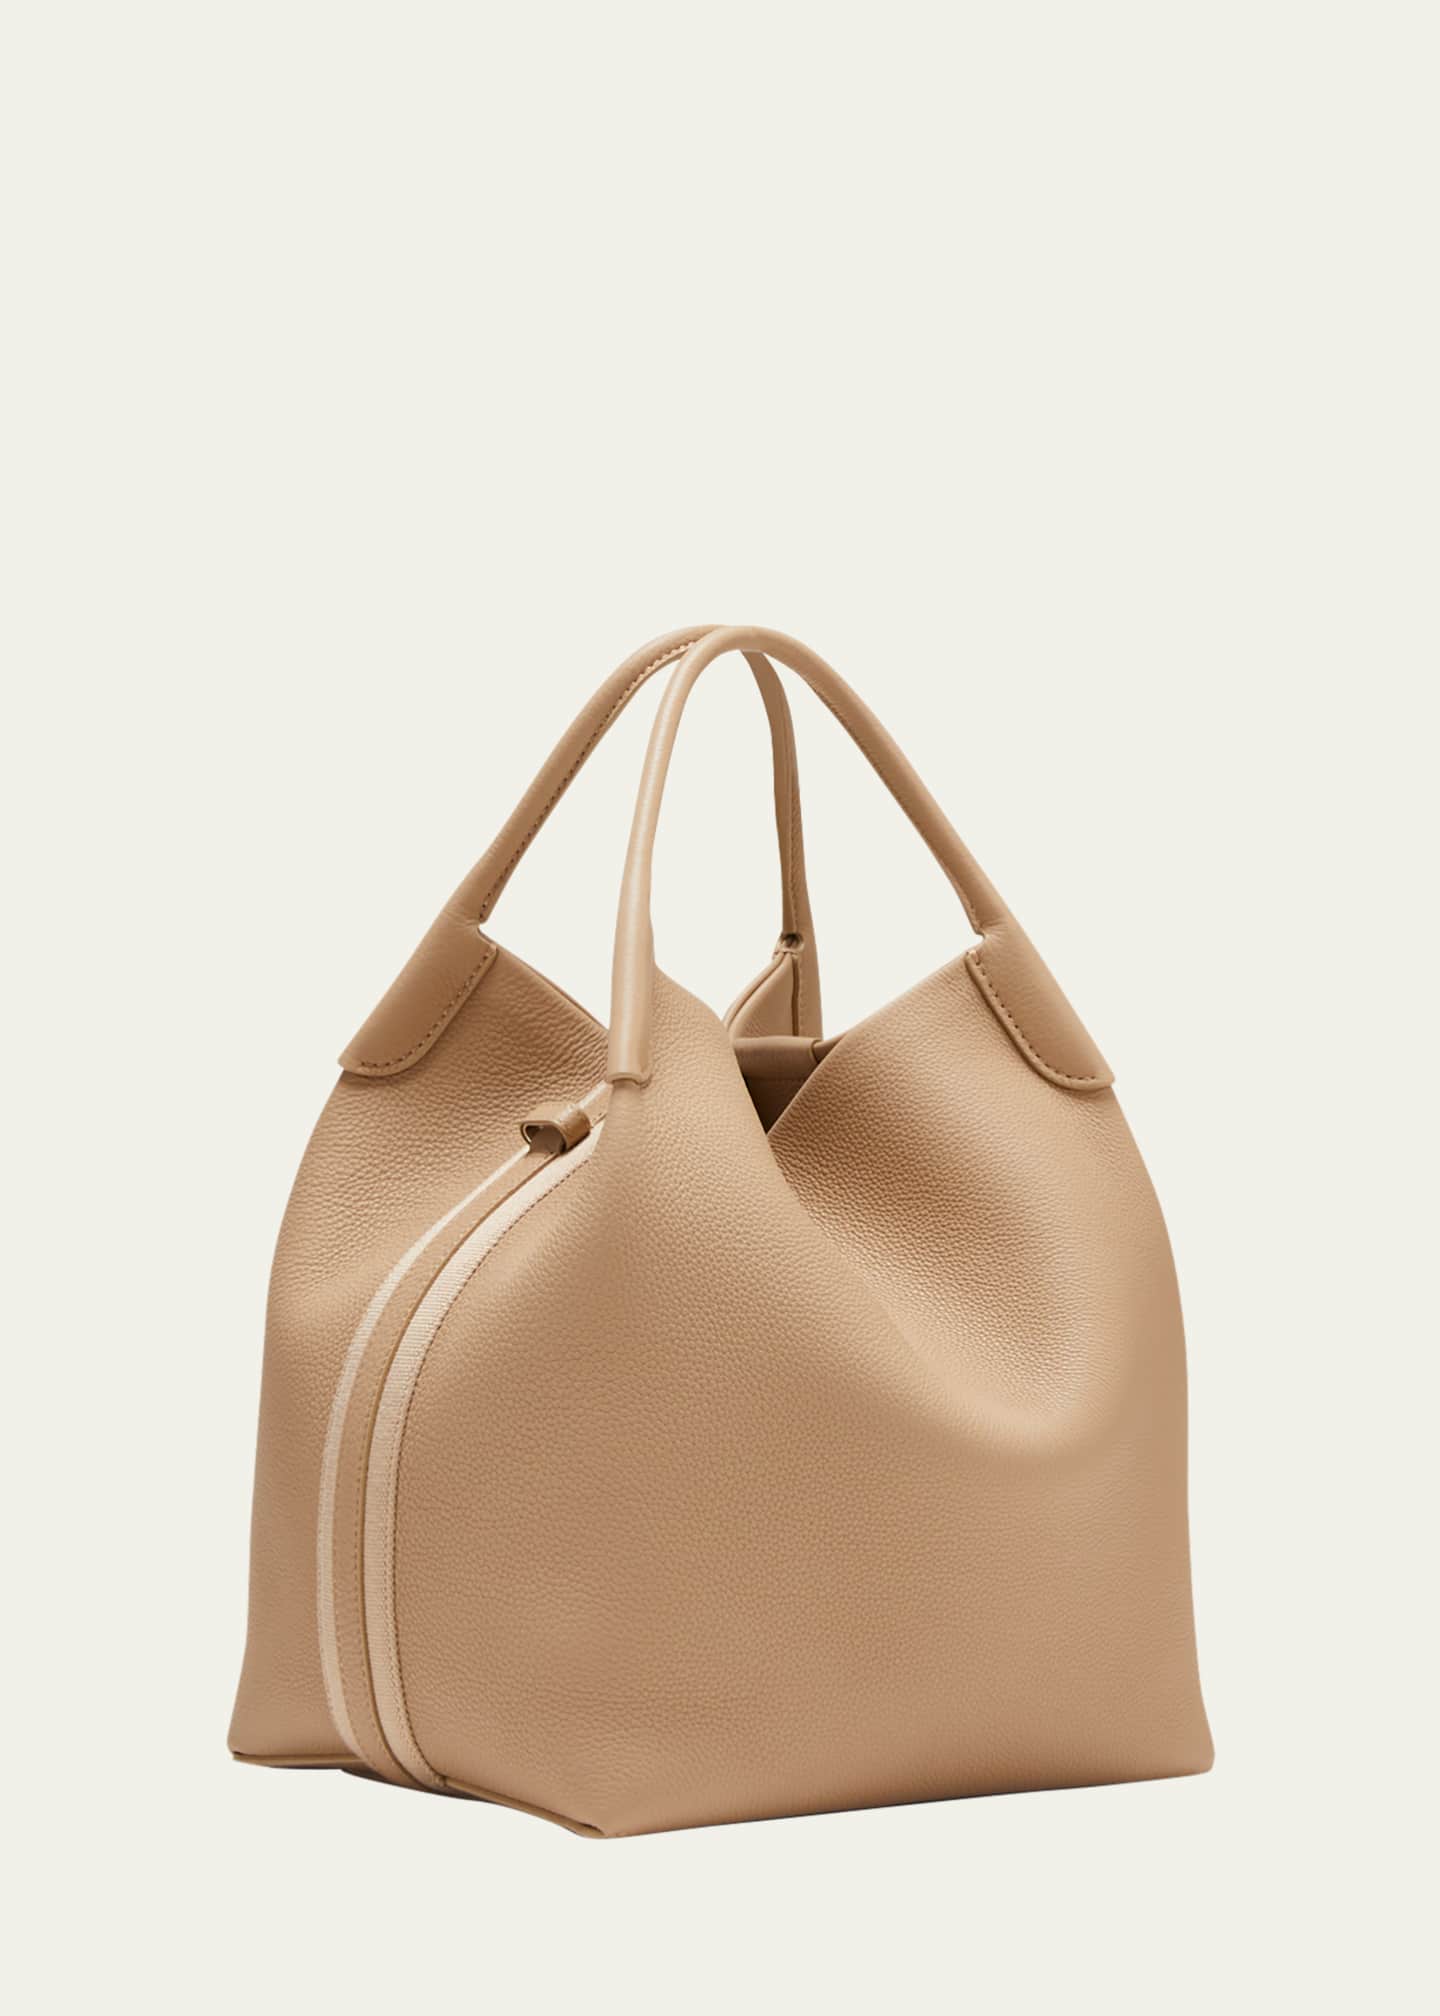 Loro Piana Bags & Handbags for Women for sale